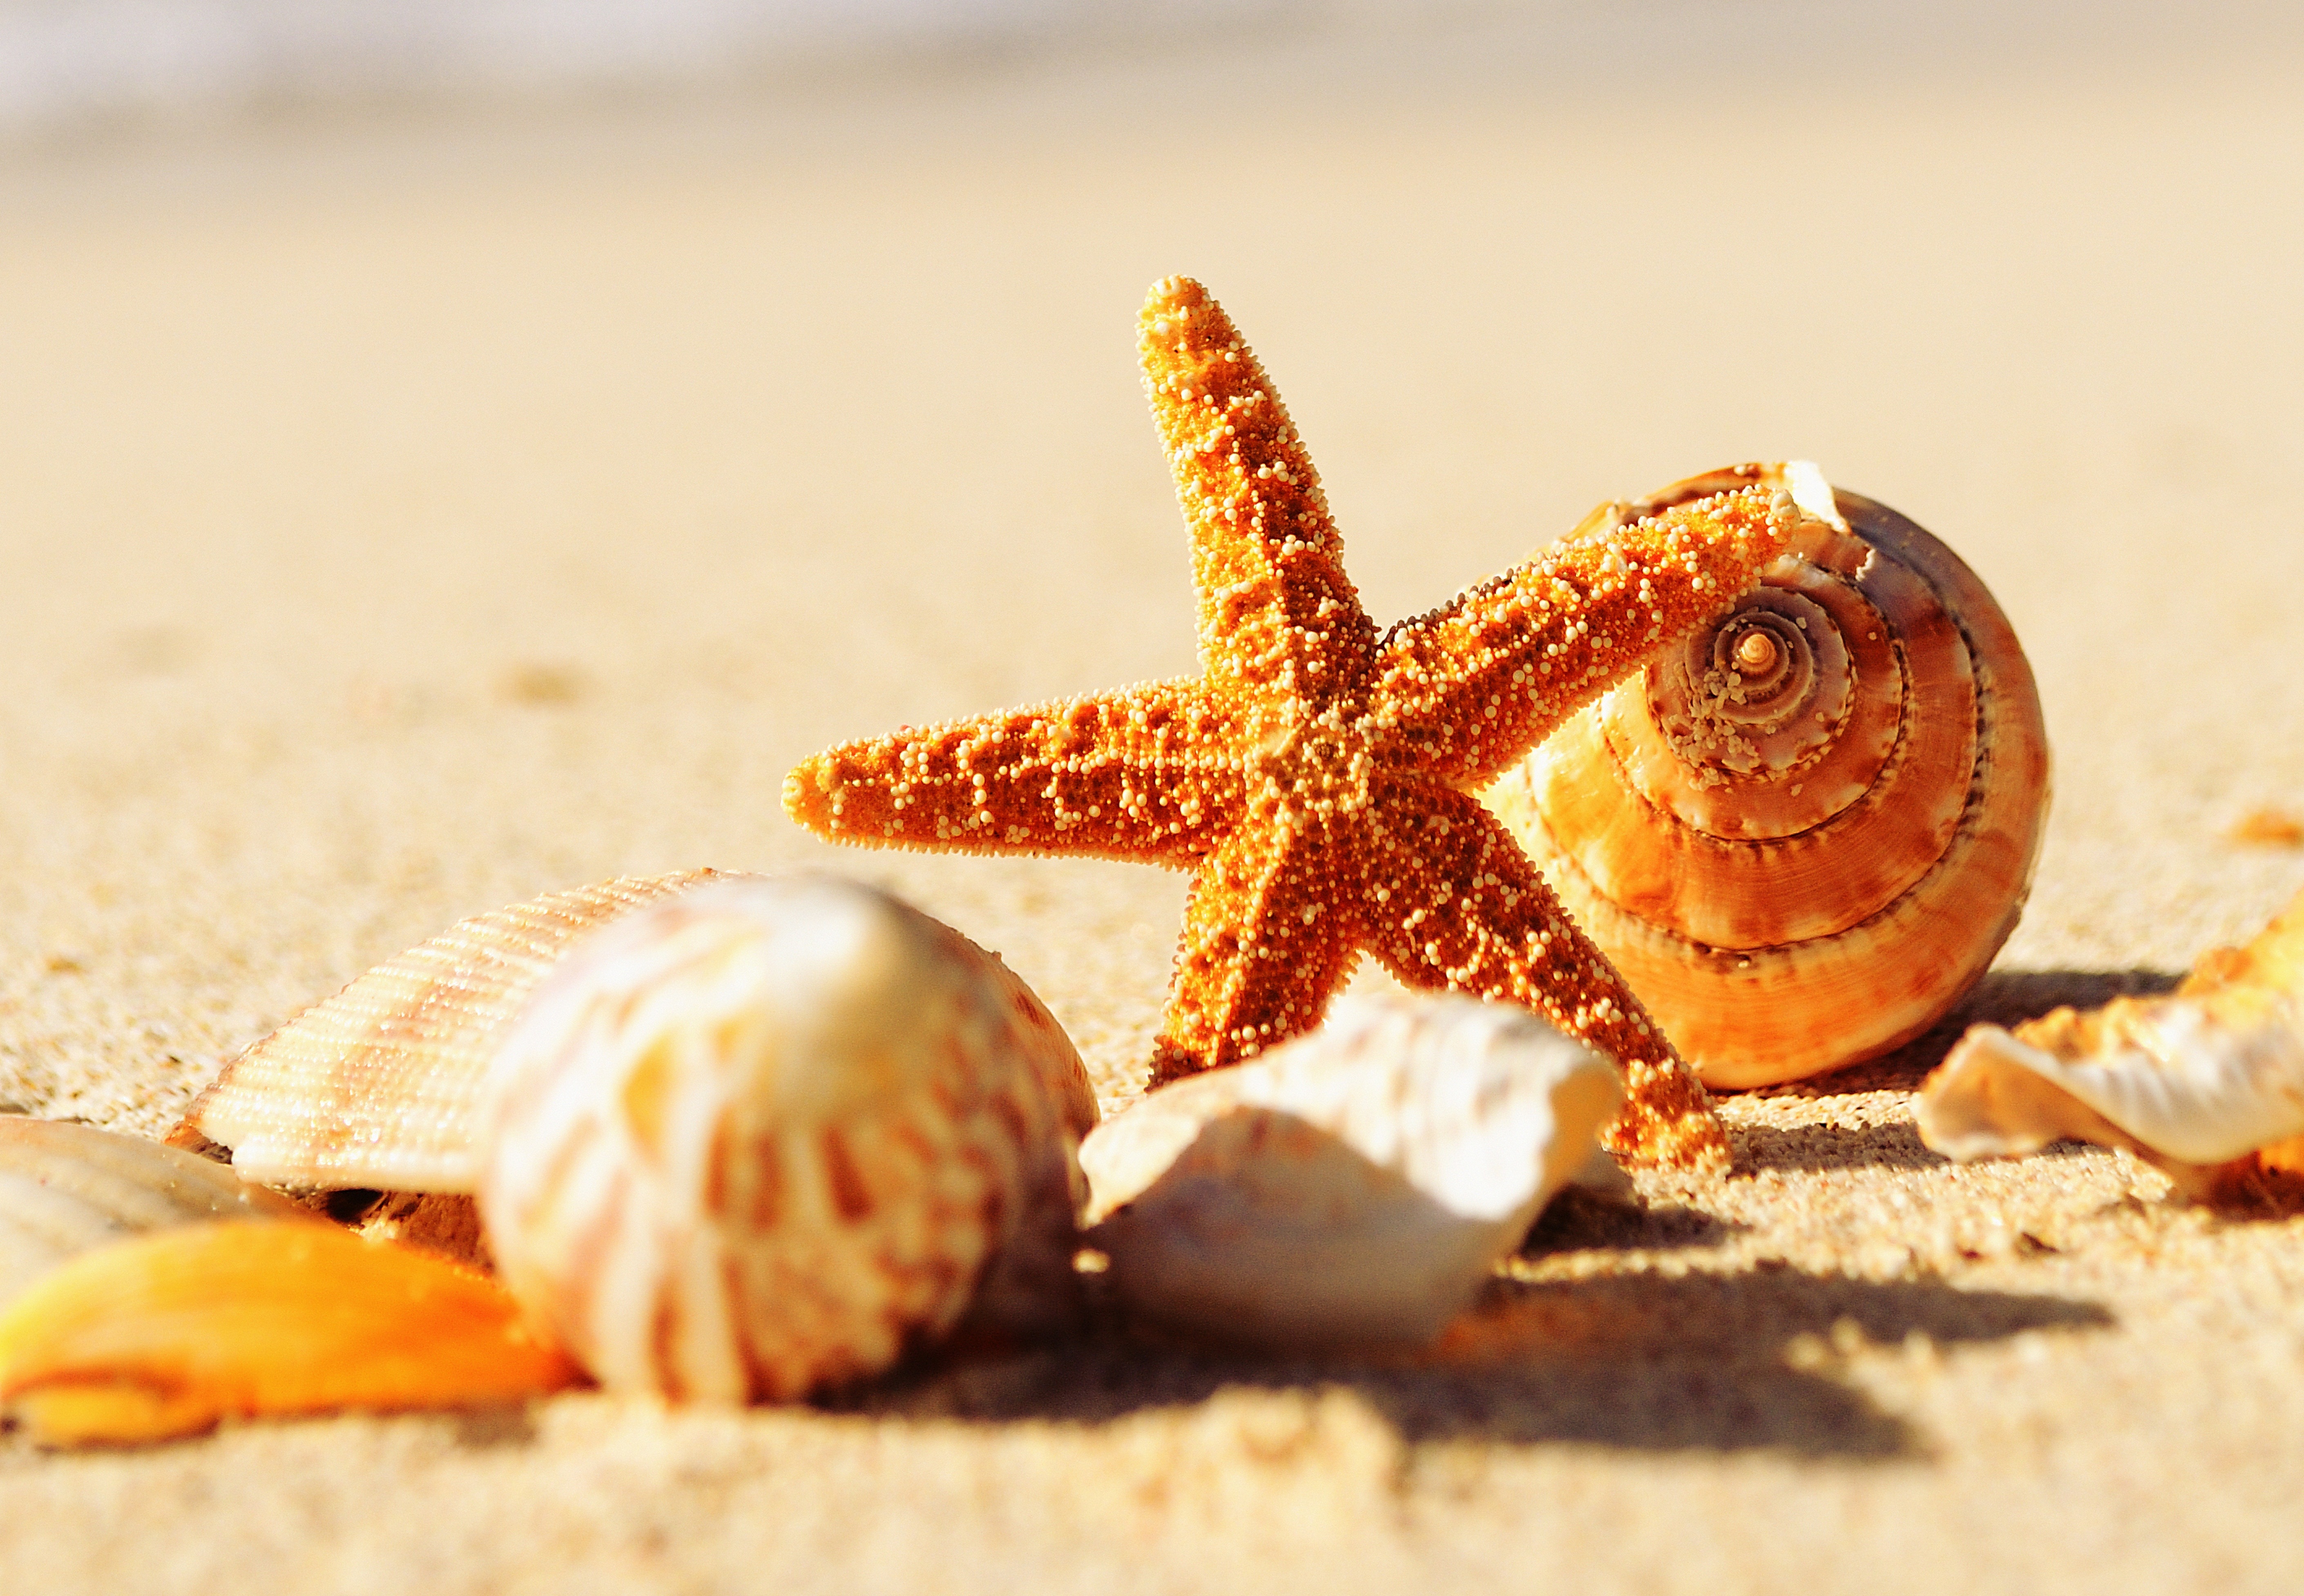 Zastaki.com - Ракушки и морская звезда на теплом желтом песке летом